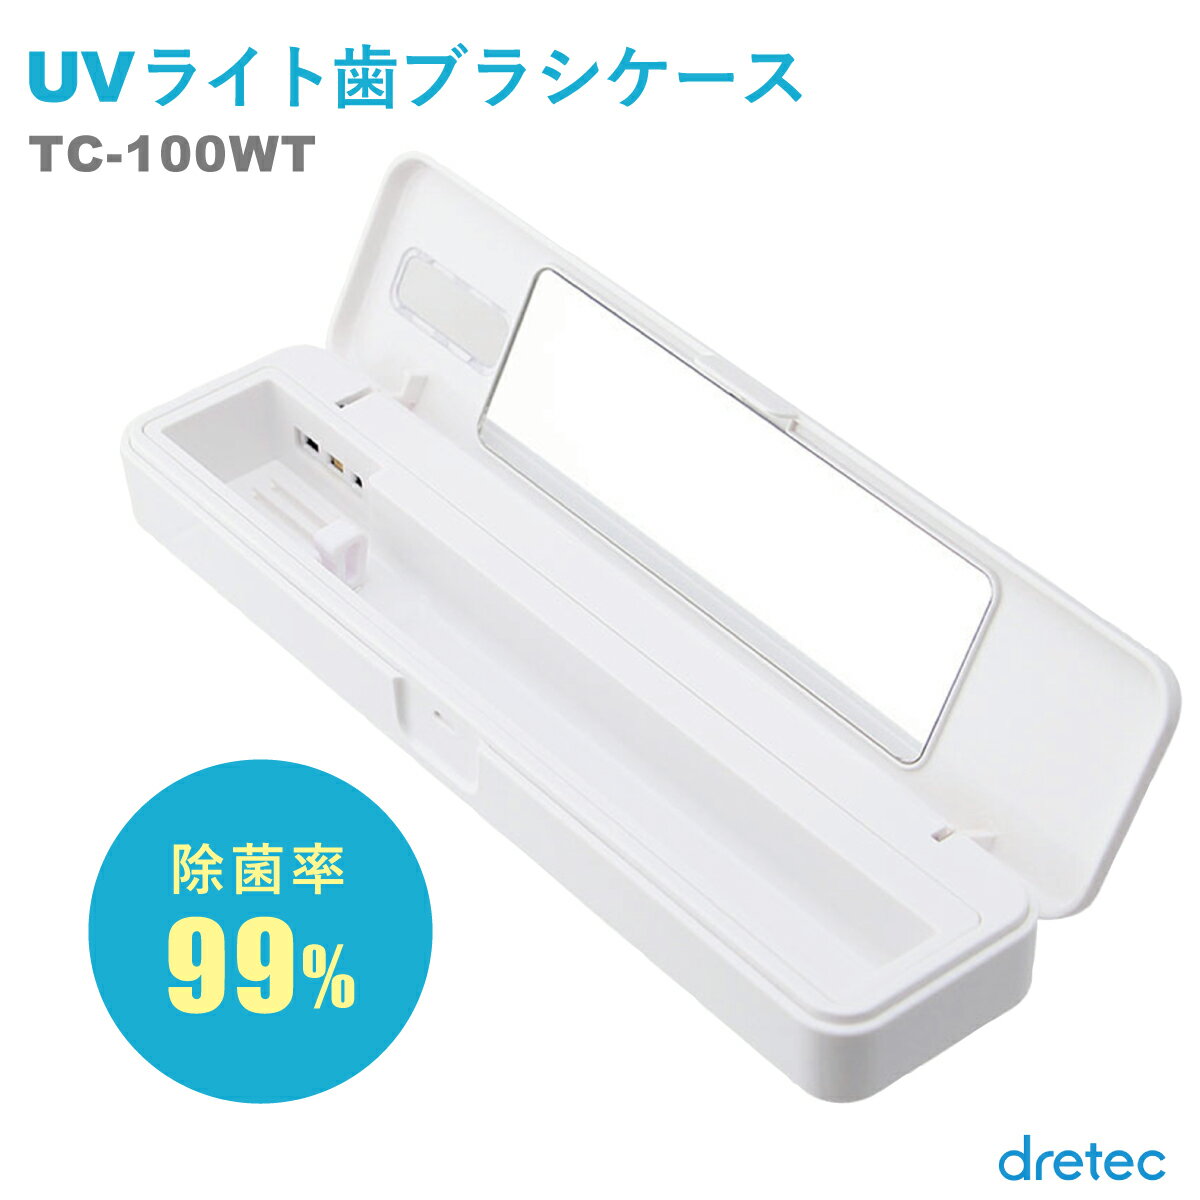 歯ブラシケース UVライト ハブラシケース 携帯用 UVライ